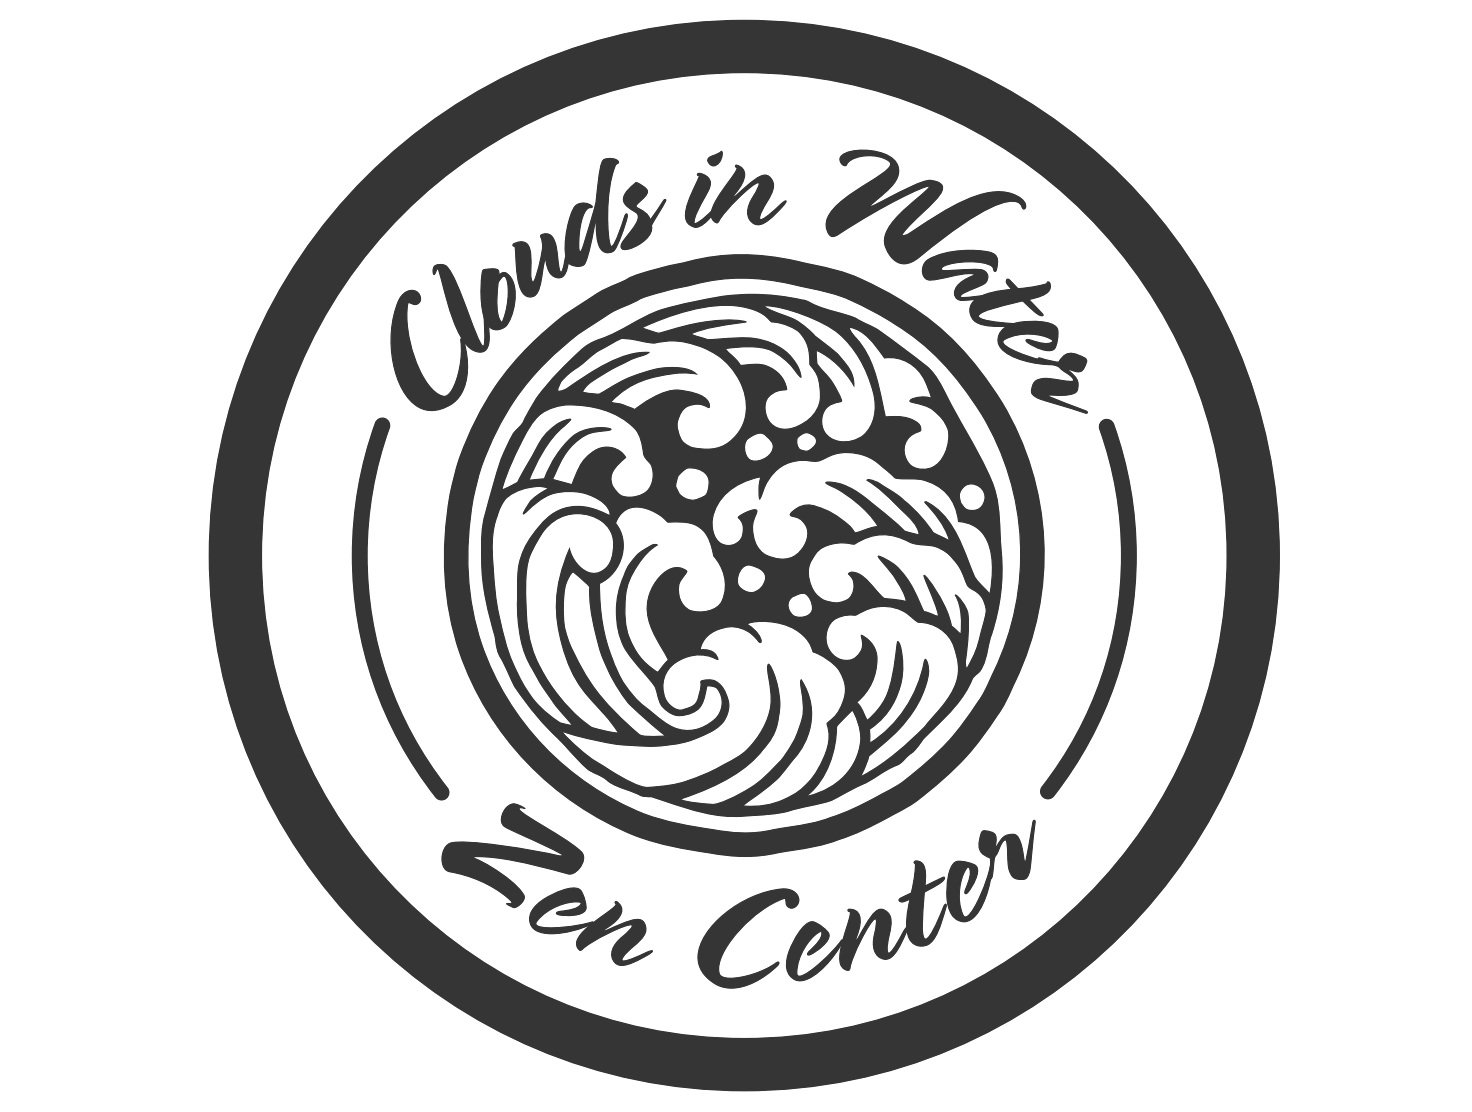 Clouds in Water Zen Center